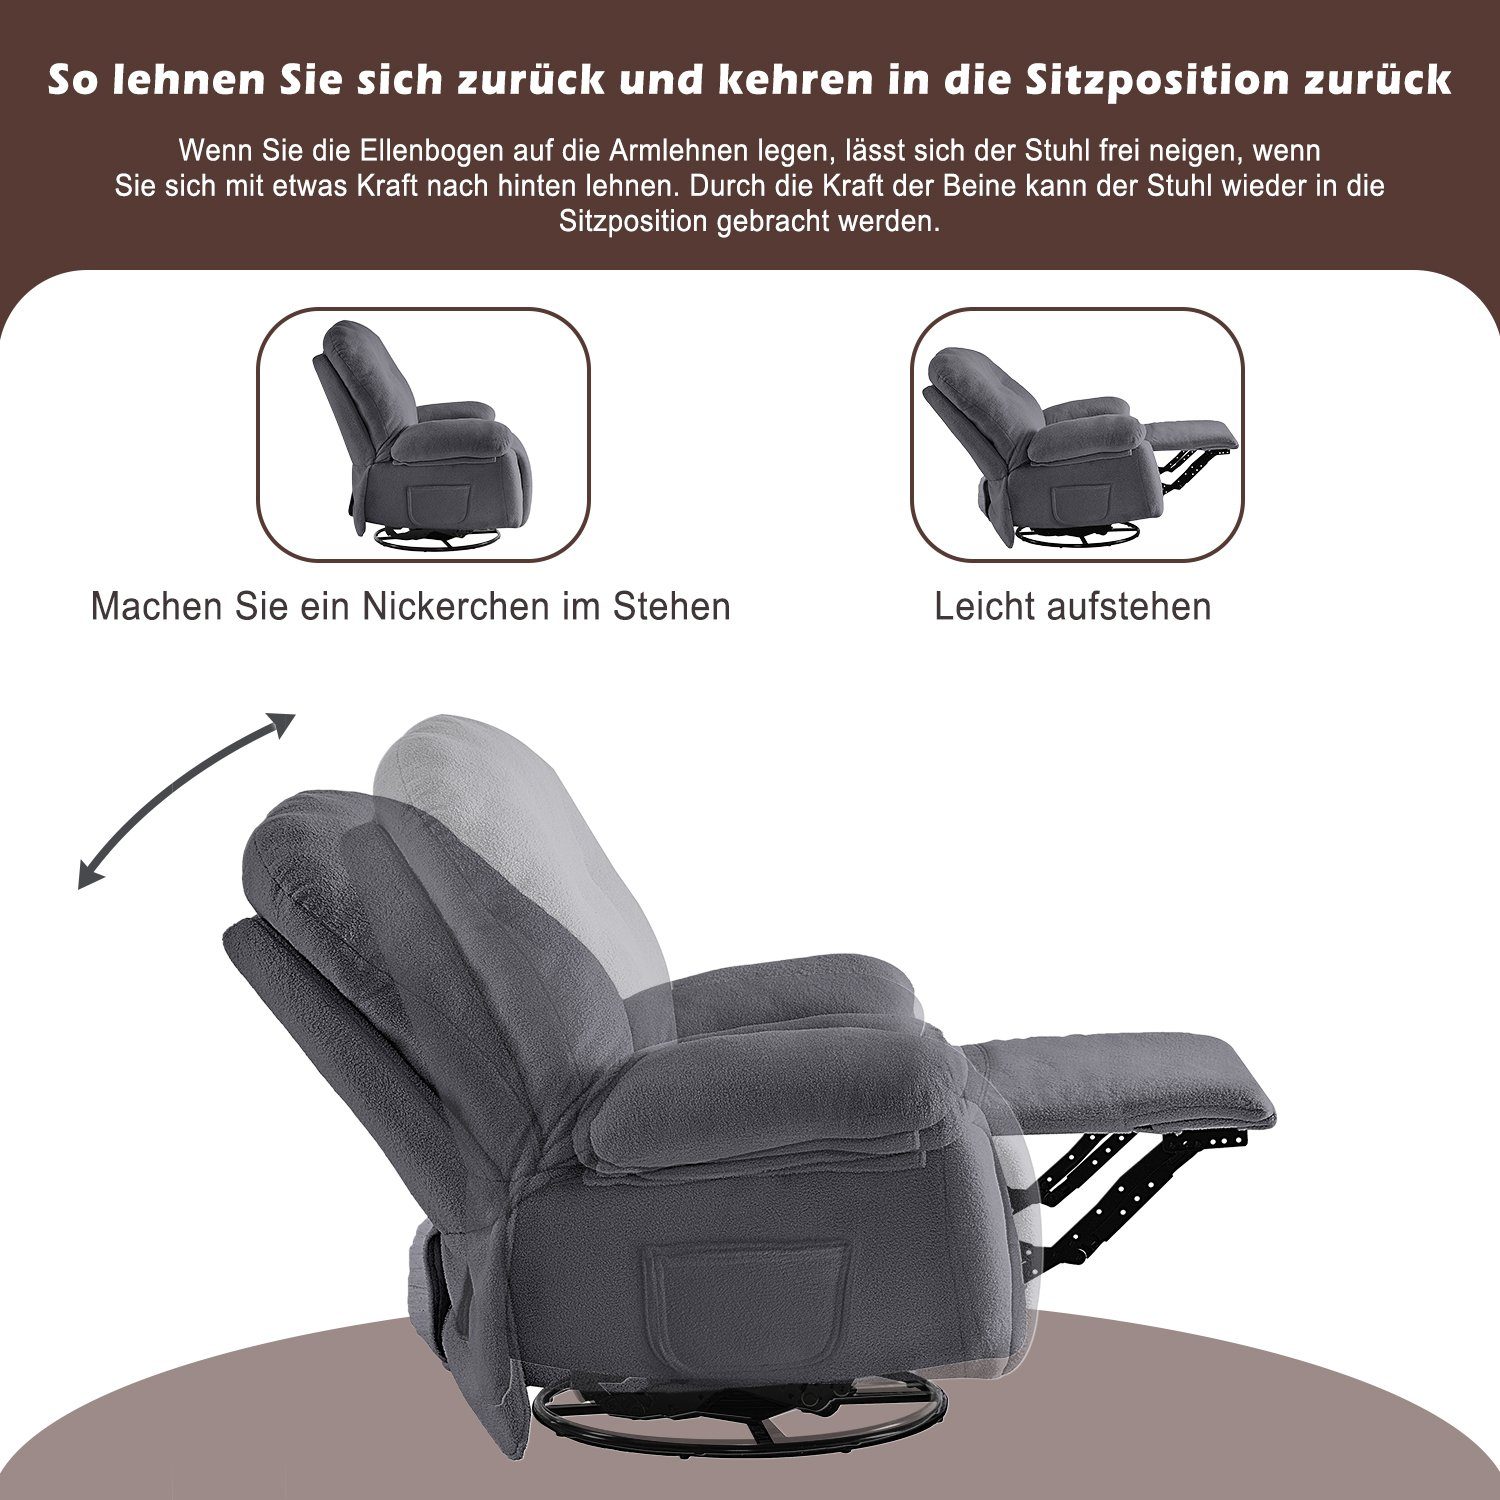 Merax TV-Sessel mit mit Fernsehsessel 360° mit Massagessel Relaxsessel elektrisch Wärmefunktion, Grau Vibration und Timer, Fernbedienung, Drehfunktion und